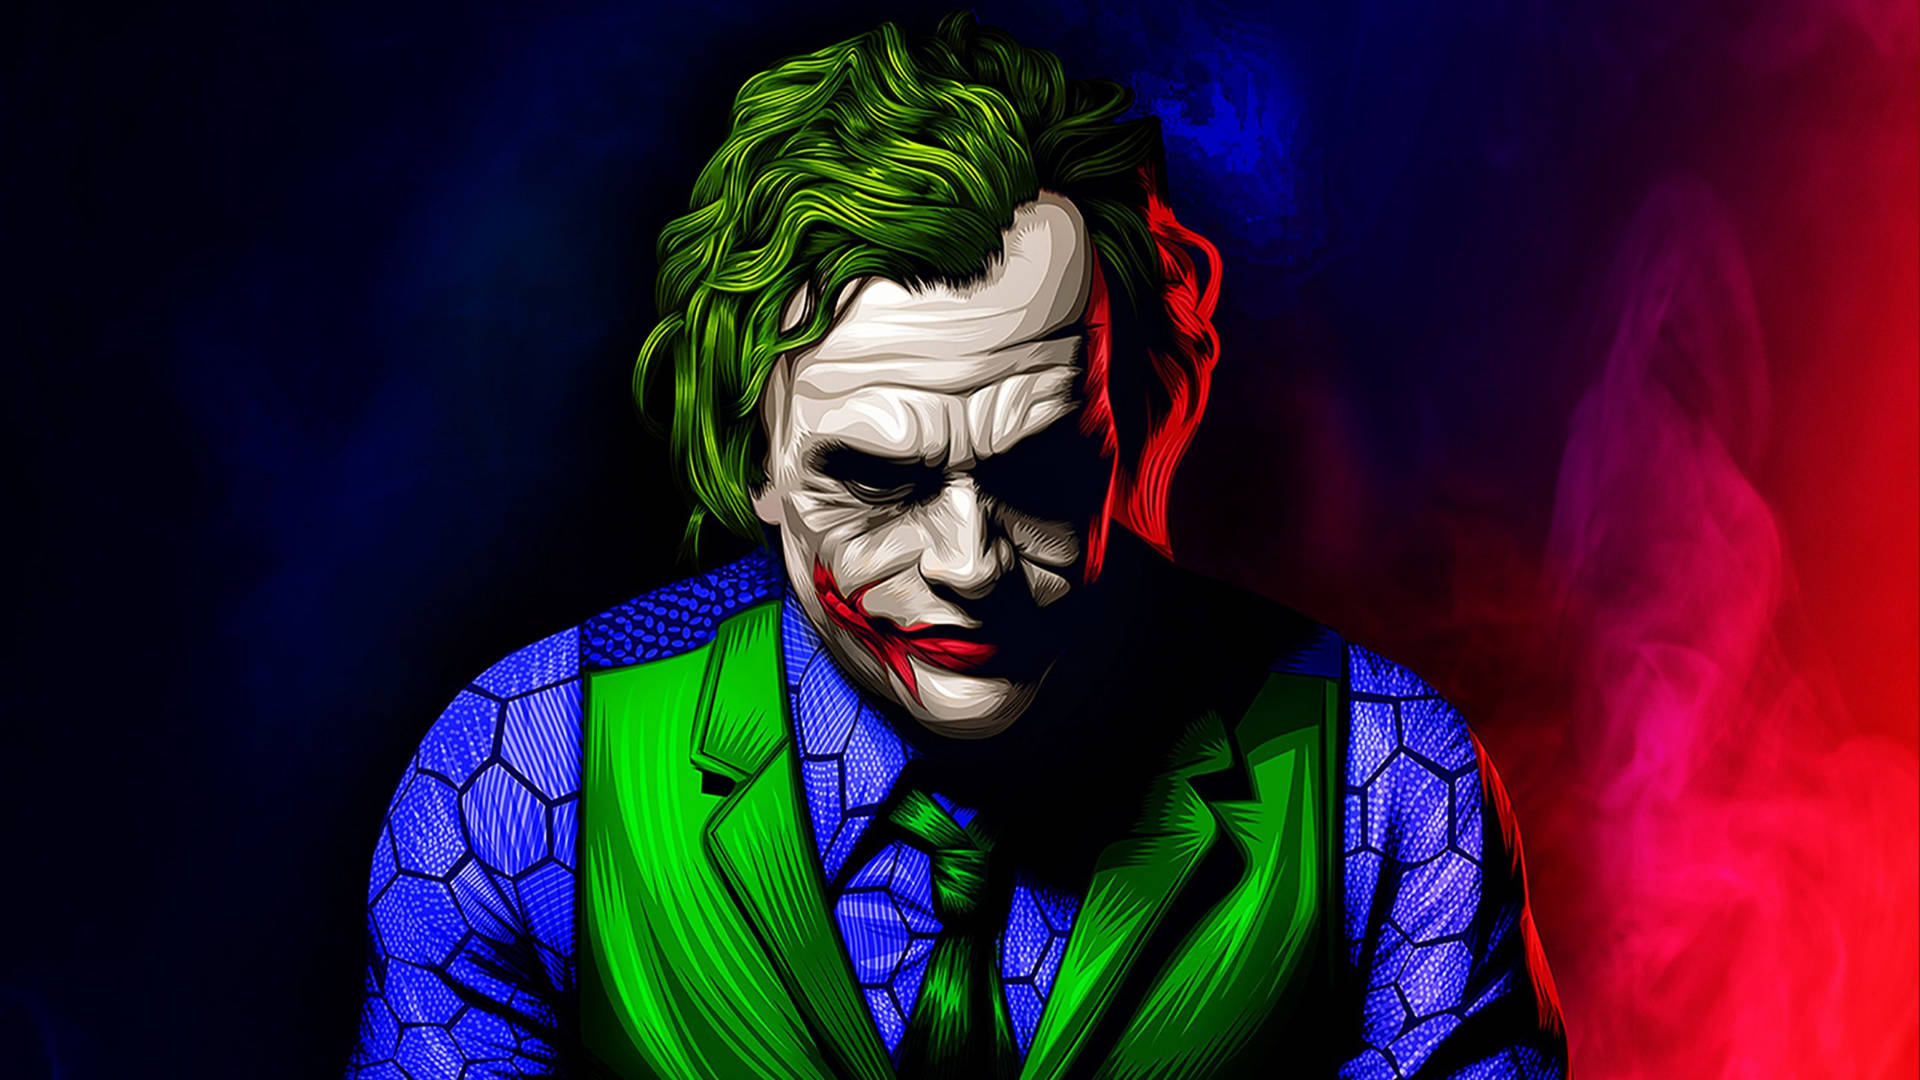 Joker Ledger Neon Art Wallpaper